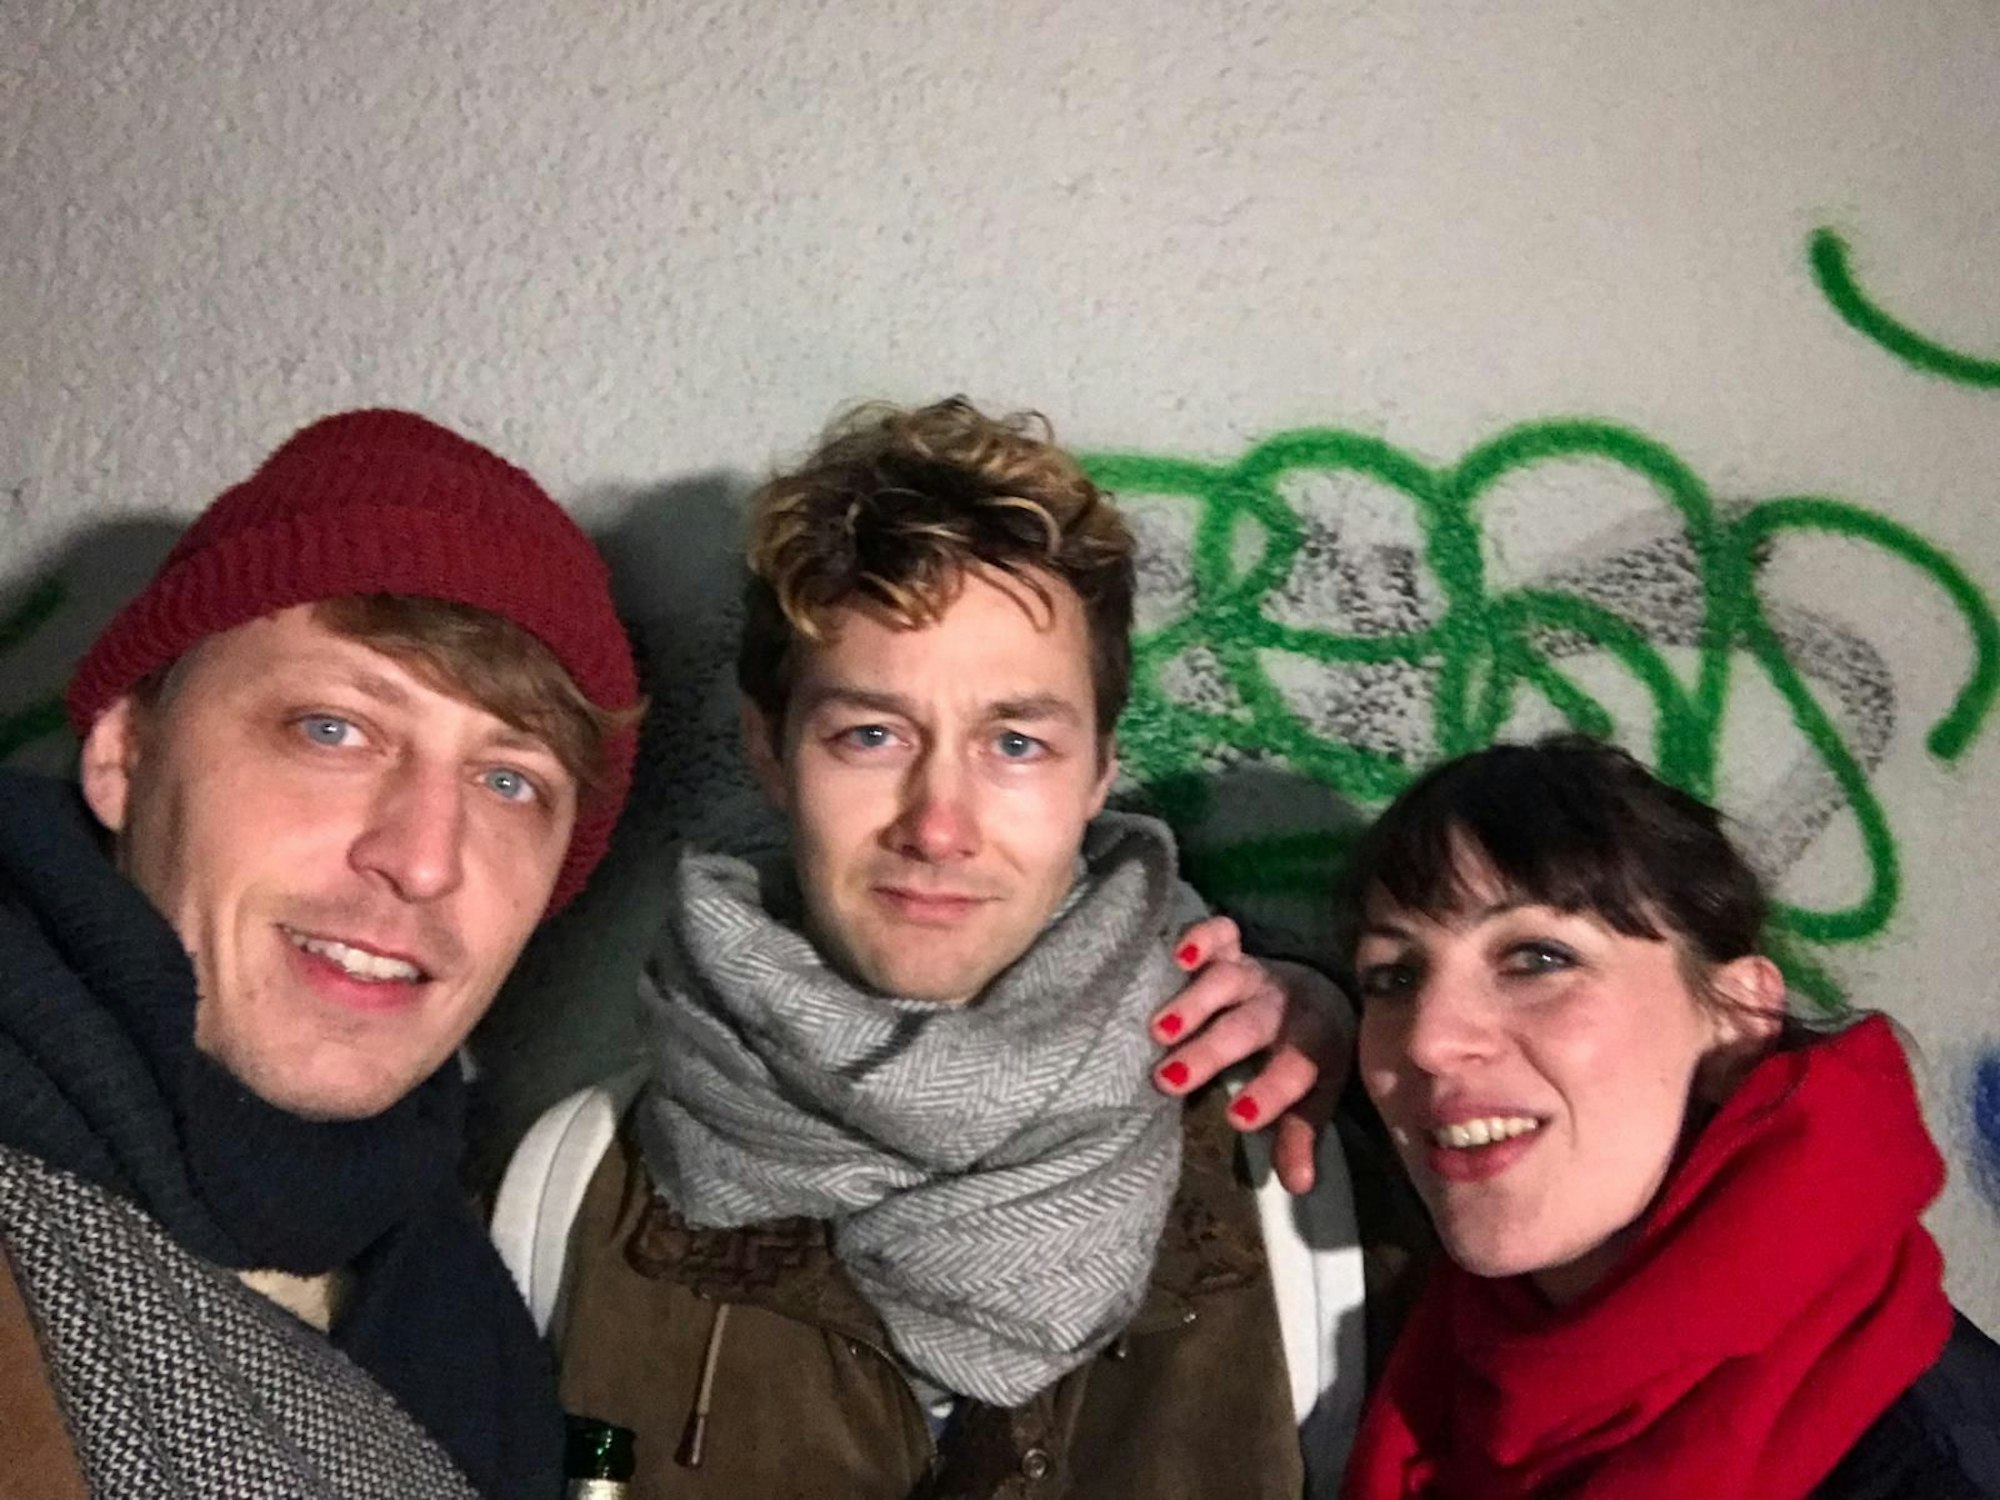 Ein Selfie der Schauspieler Simon Rußig, Tim-Fabian Hoffmann und Oona von Maydell vor einer Wand.